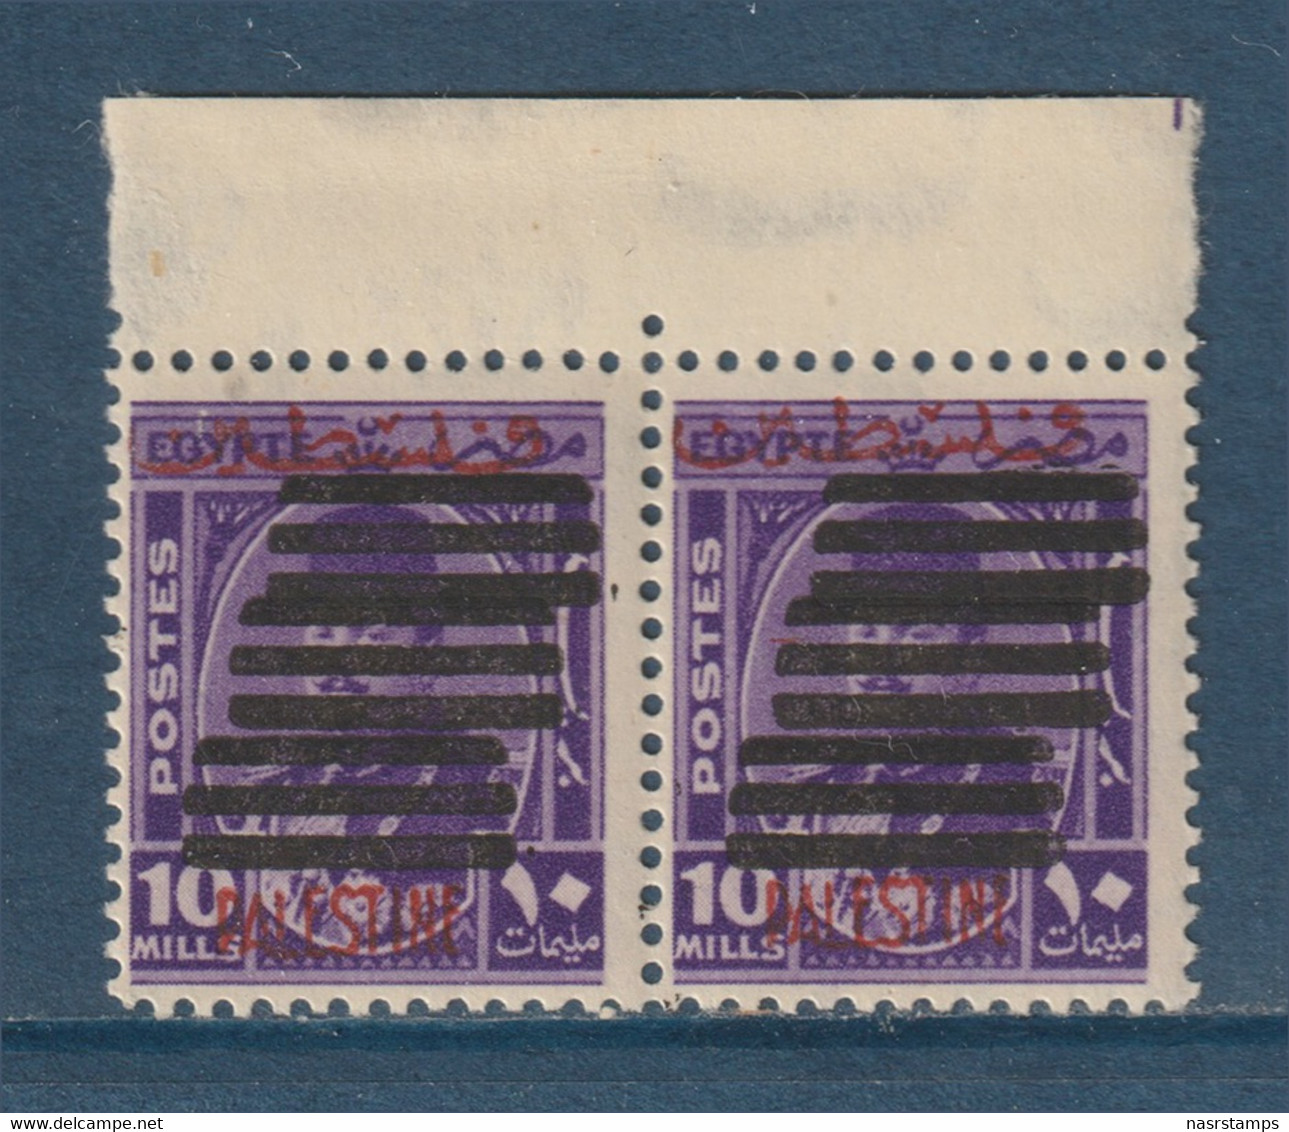 Egypt - Palestine - 1953 - Very Rare - Overprinted 9 Bars - ( 10m - K. Farouk ) - MNH - Nuovi